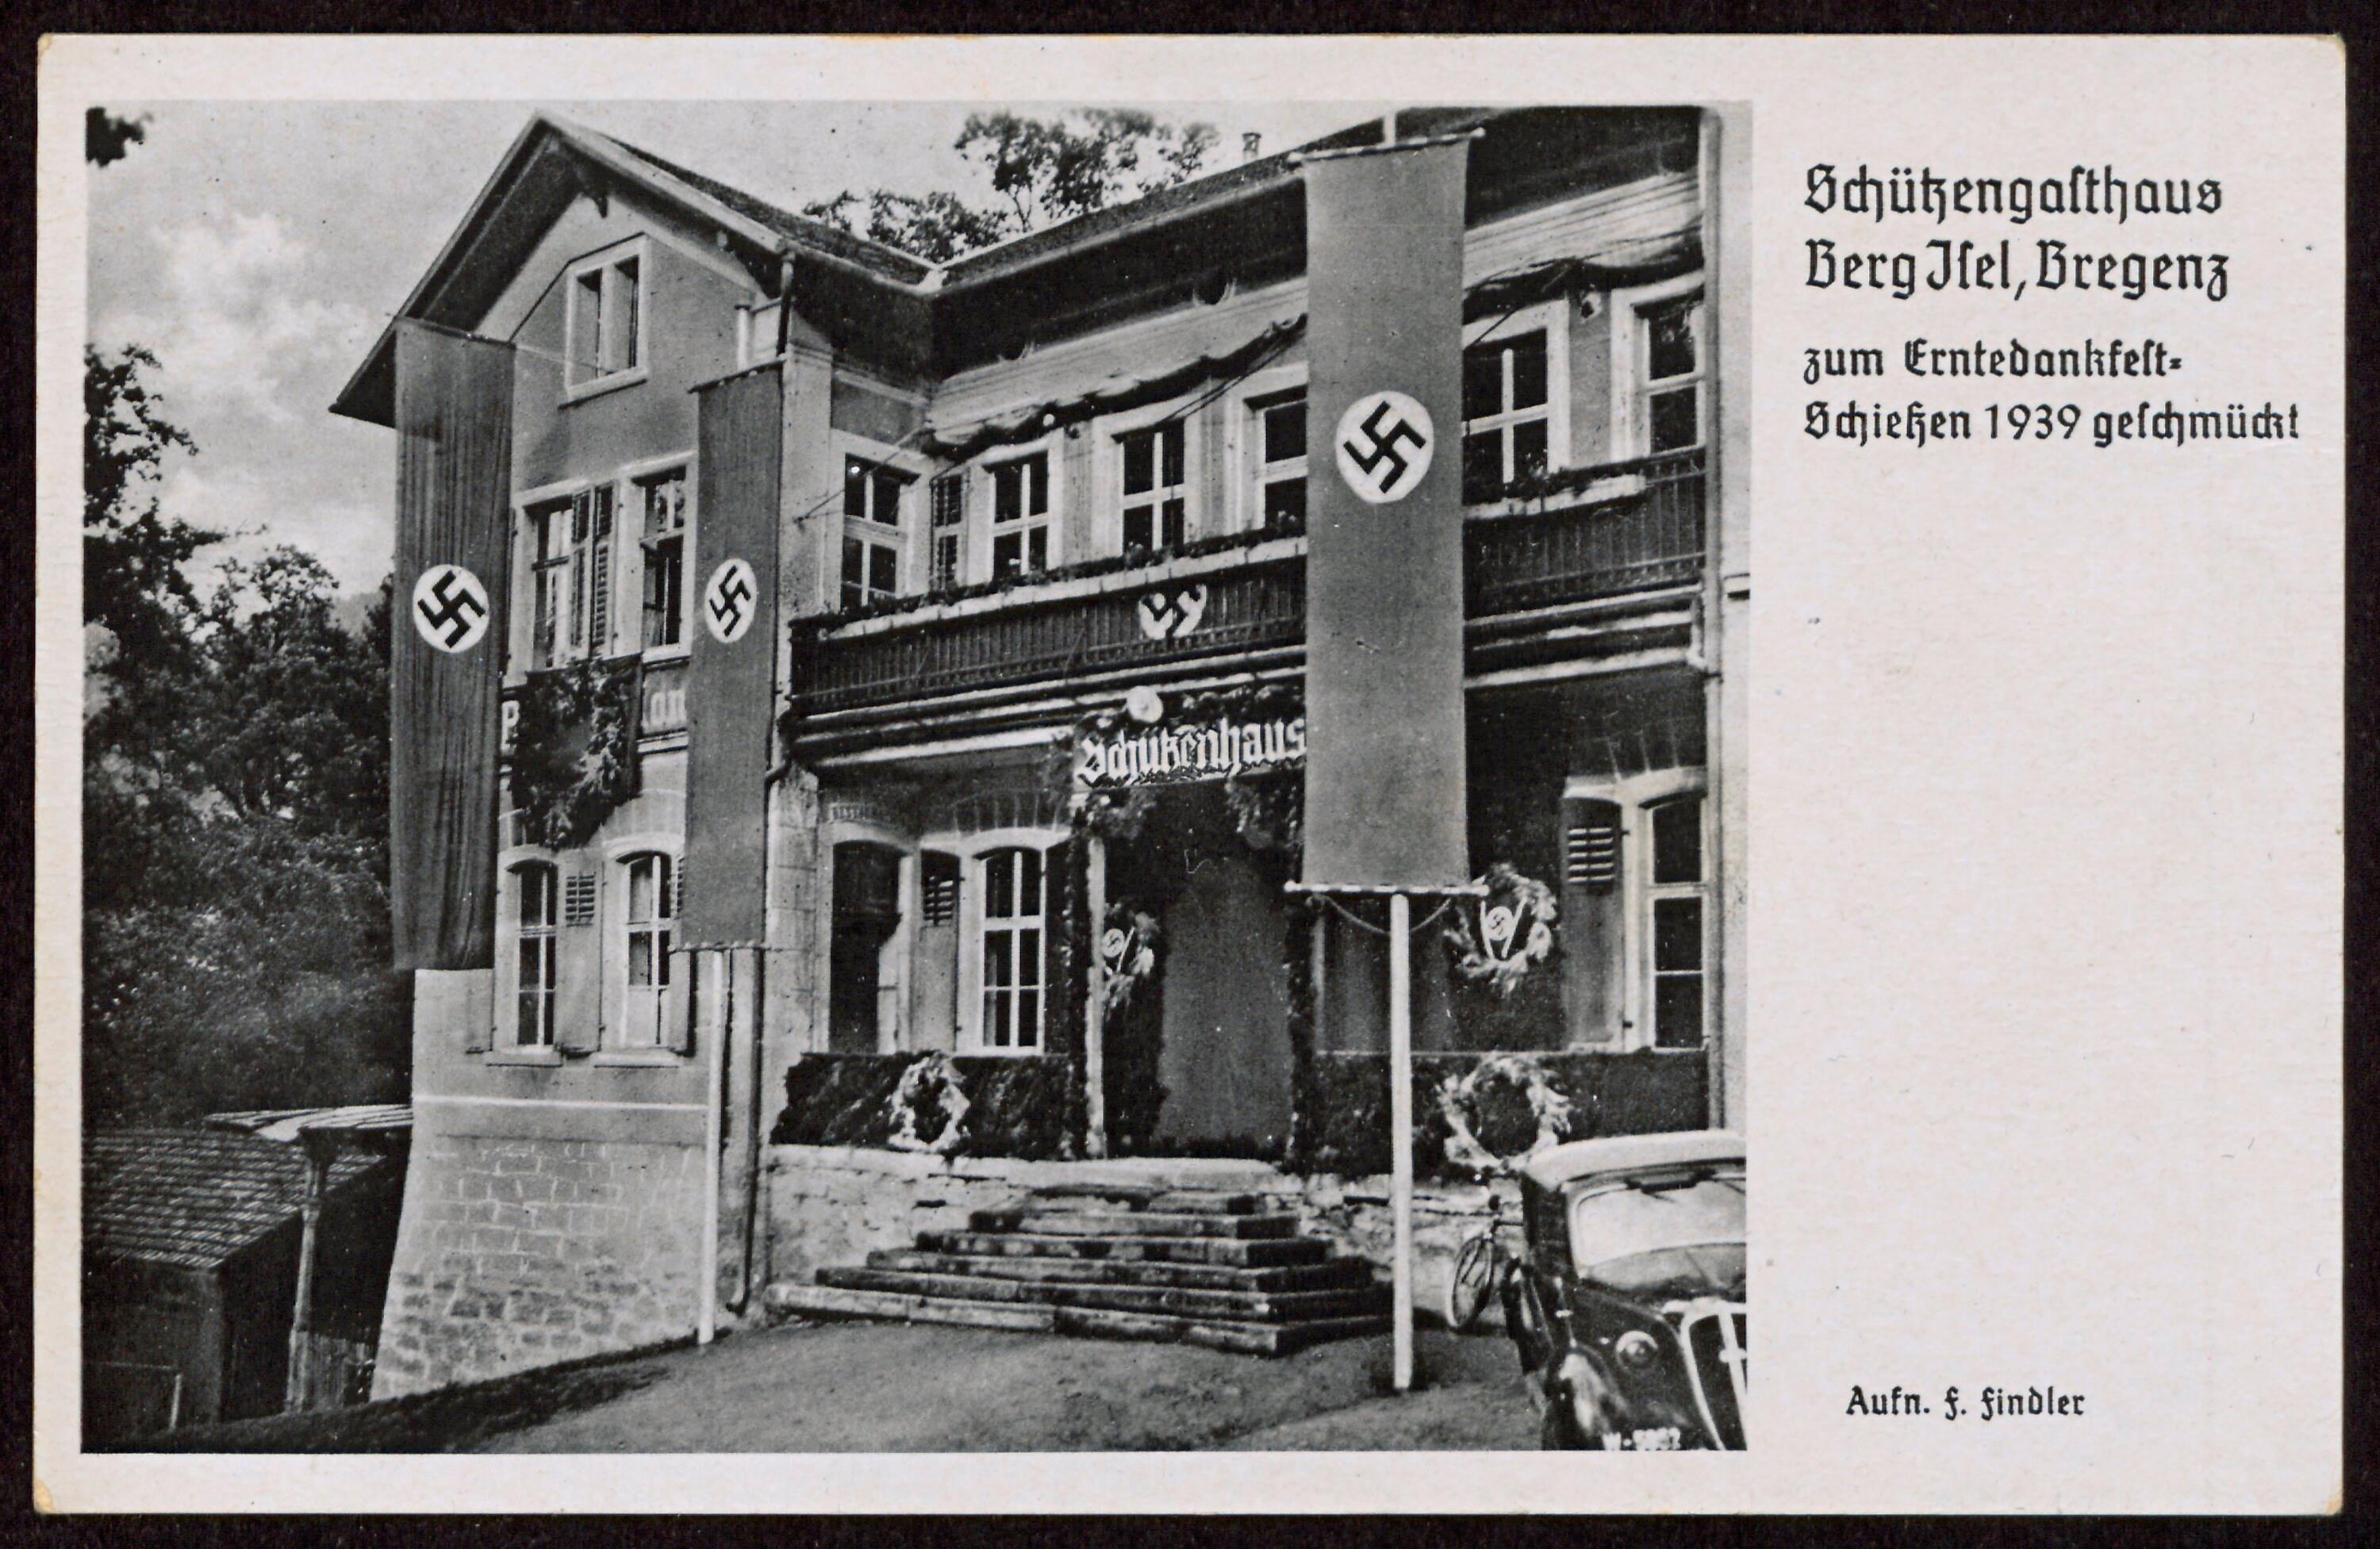 Schützengasthaus Berg Jsel, Bregenz zum Erntedankfest- Schießen 1939 geschmückt></div>


    <hr>
    <div class=